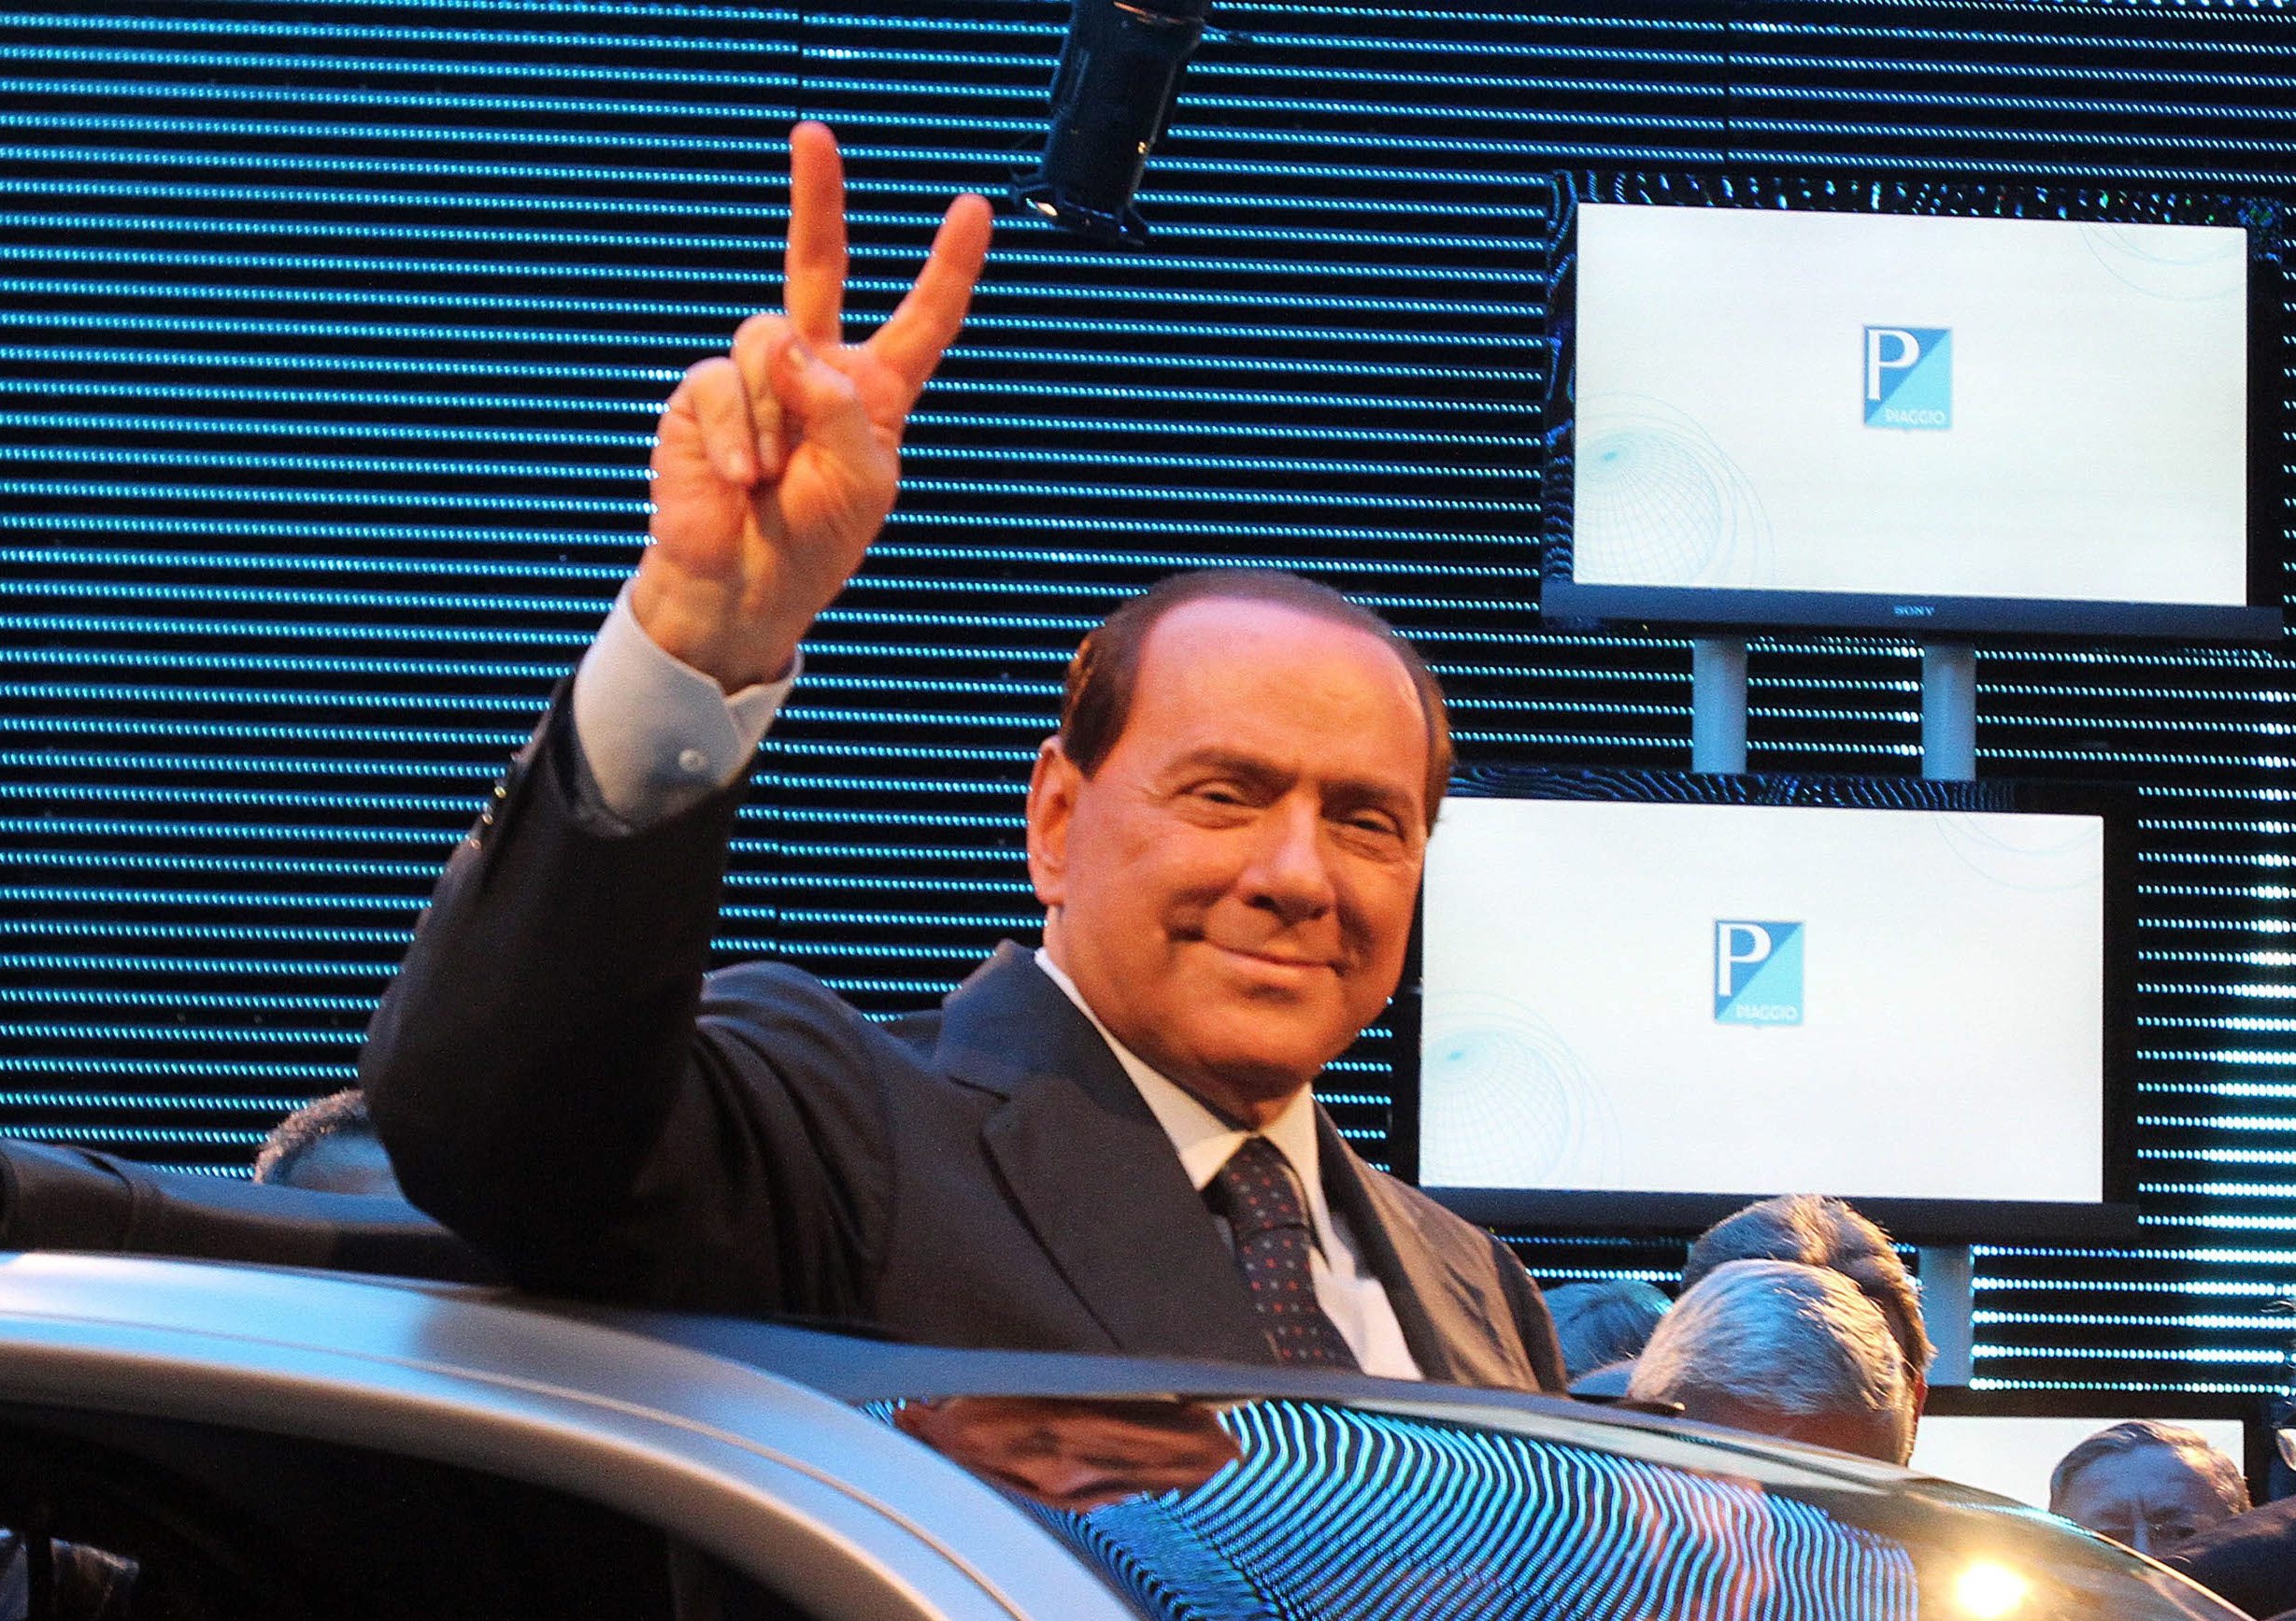 De rechtbank in Milaan heeft de Italiaanse oud-premier Silvio Berlusconi een taakstraf van 1 jaar opgelegd. Dat heeft het Italiaanse persbureau ANSA gemeld. De 77-jarige Berlusconi werd vorig jaar definitief tot 4 jaar cel veroordeeld wegens belastingfraude. Hij had zelf om een taakstraf gevraagd. De oud-premier wil gehandicapten gaan helpen. Het Openbaar Ministerie was het vorige week met het verzoek eens.